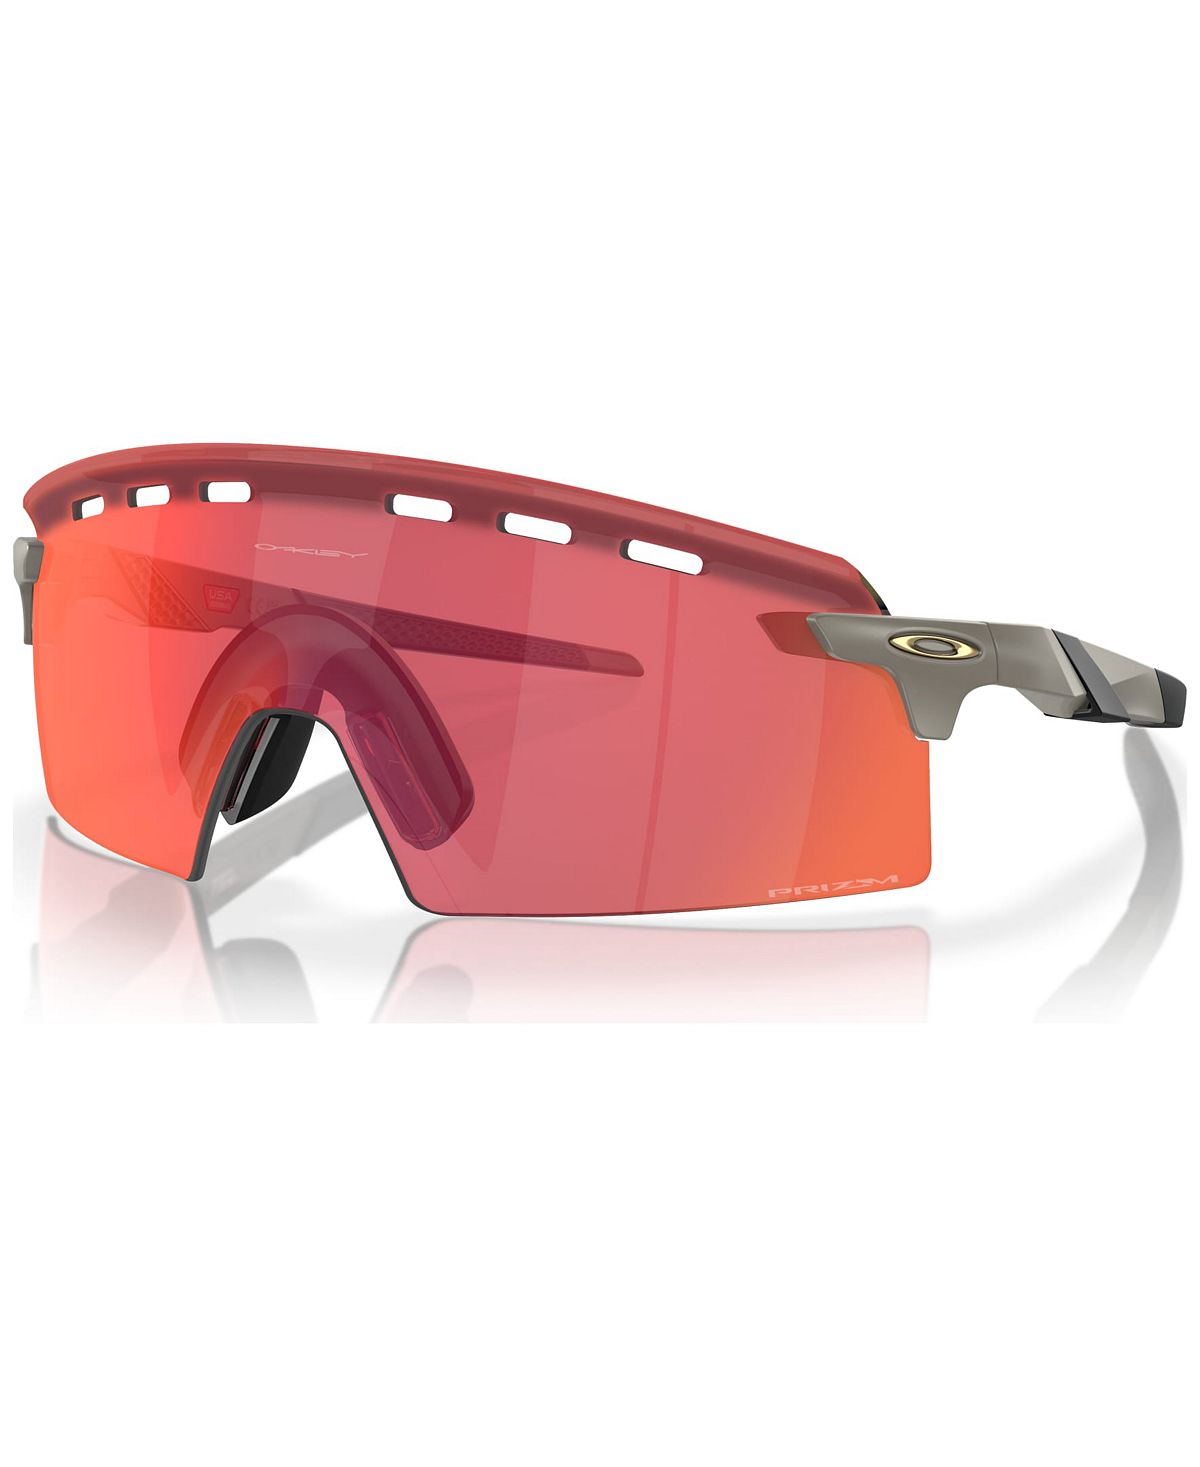 Мужские солнцезащитные очки Encoder Strike с вентиляцией, OO9235 Oakley мужские солнцезащитные очки tour de france 2023 encoder strike vented oakley